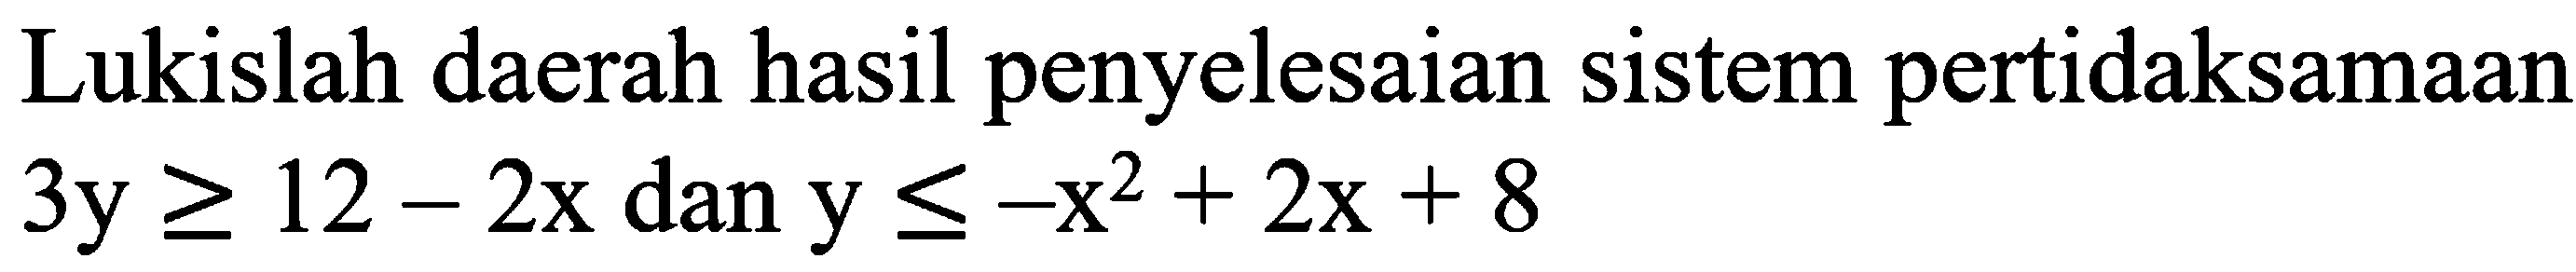 Lukislah daerah hasil penyelesaian sistem pertidaksamaan 3y>=12-2x dan y<=-x^2+2x+8